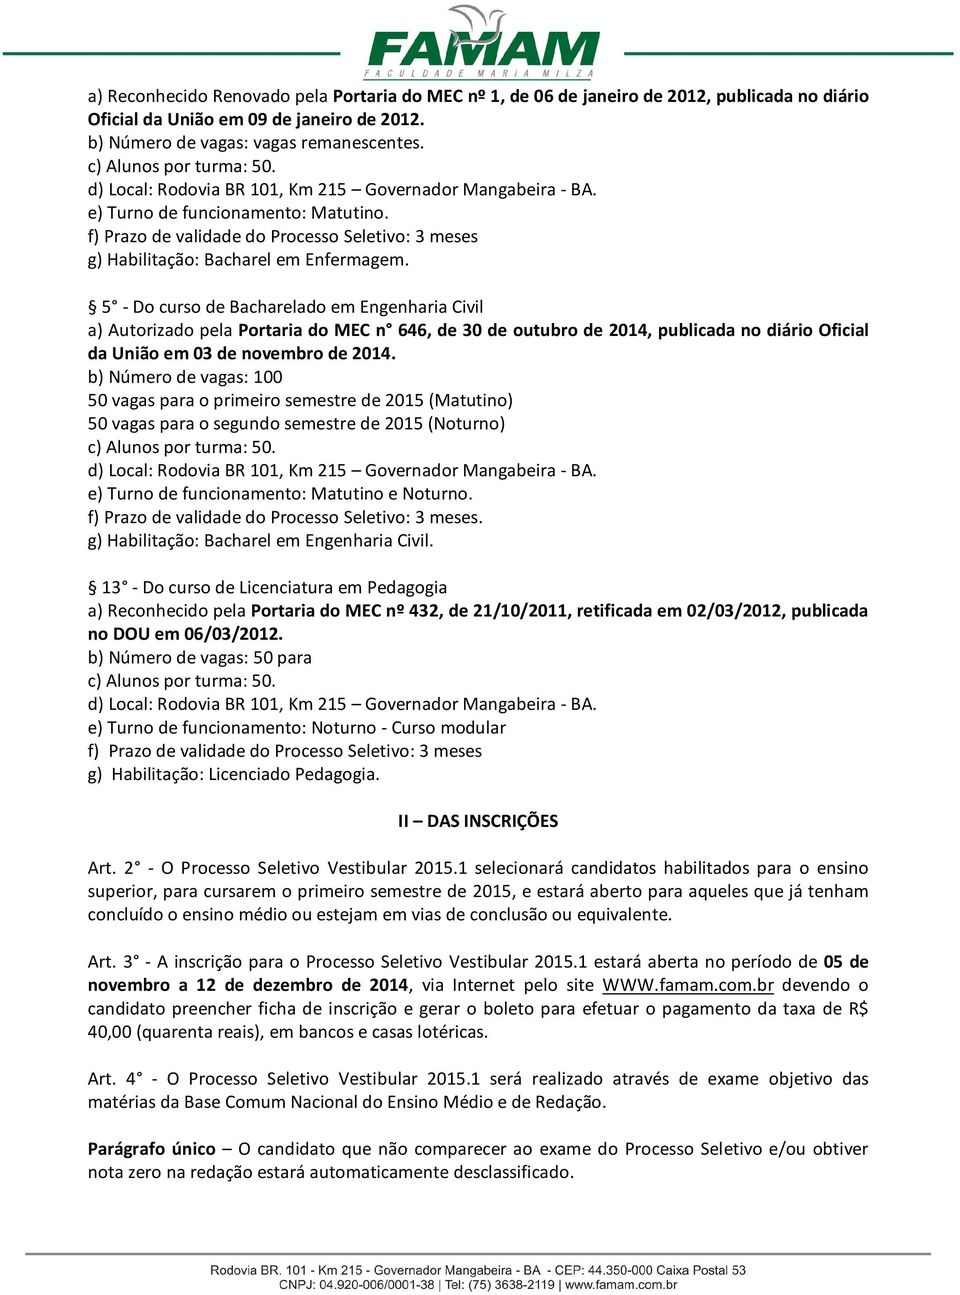 5 - Do curso de Bacharelado em Engenharia Civil a) Autorizado pela Portaria do MEC n 646, de 30 de outubro de 2014, publicada no diário Oficial da União em 03 de novembro de 2014.